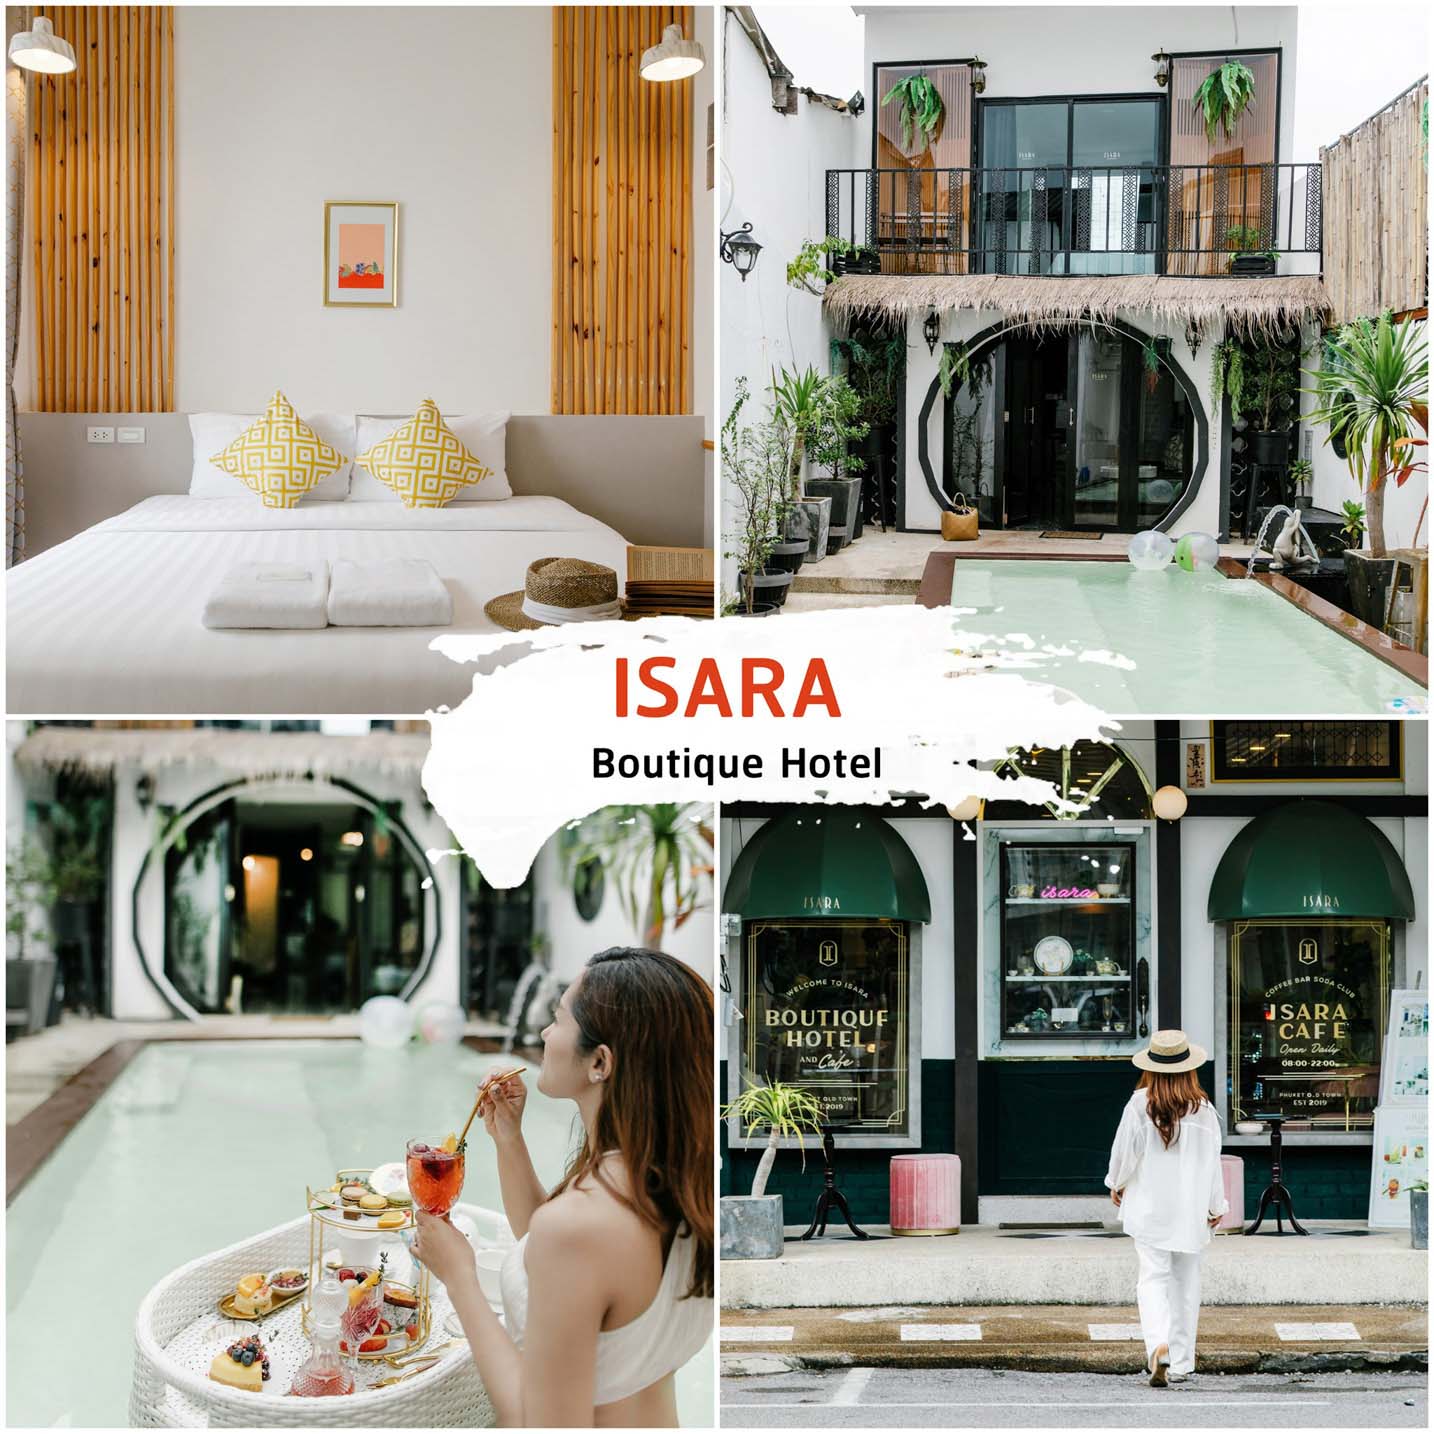 ISARA Hotel and Cafe ที่พักย่านเมืองเก่าภูเก็ต ตึกชิโนโปรตุกีส ใจกลางเมืองสุดสวย - รีวิว